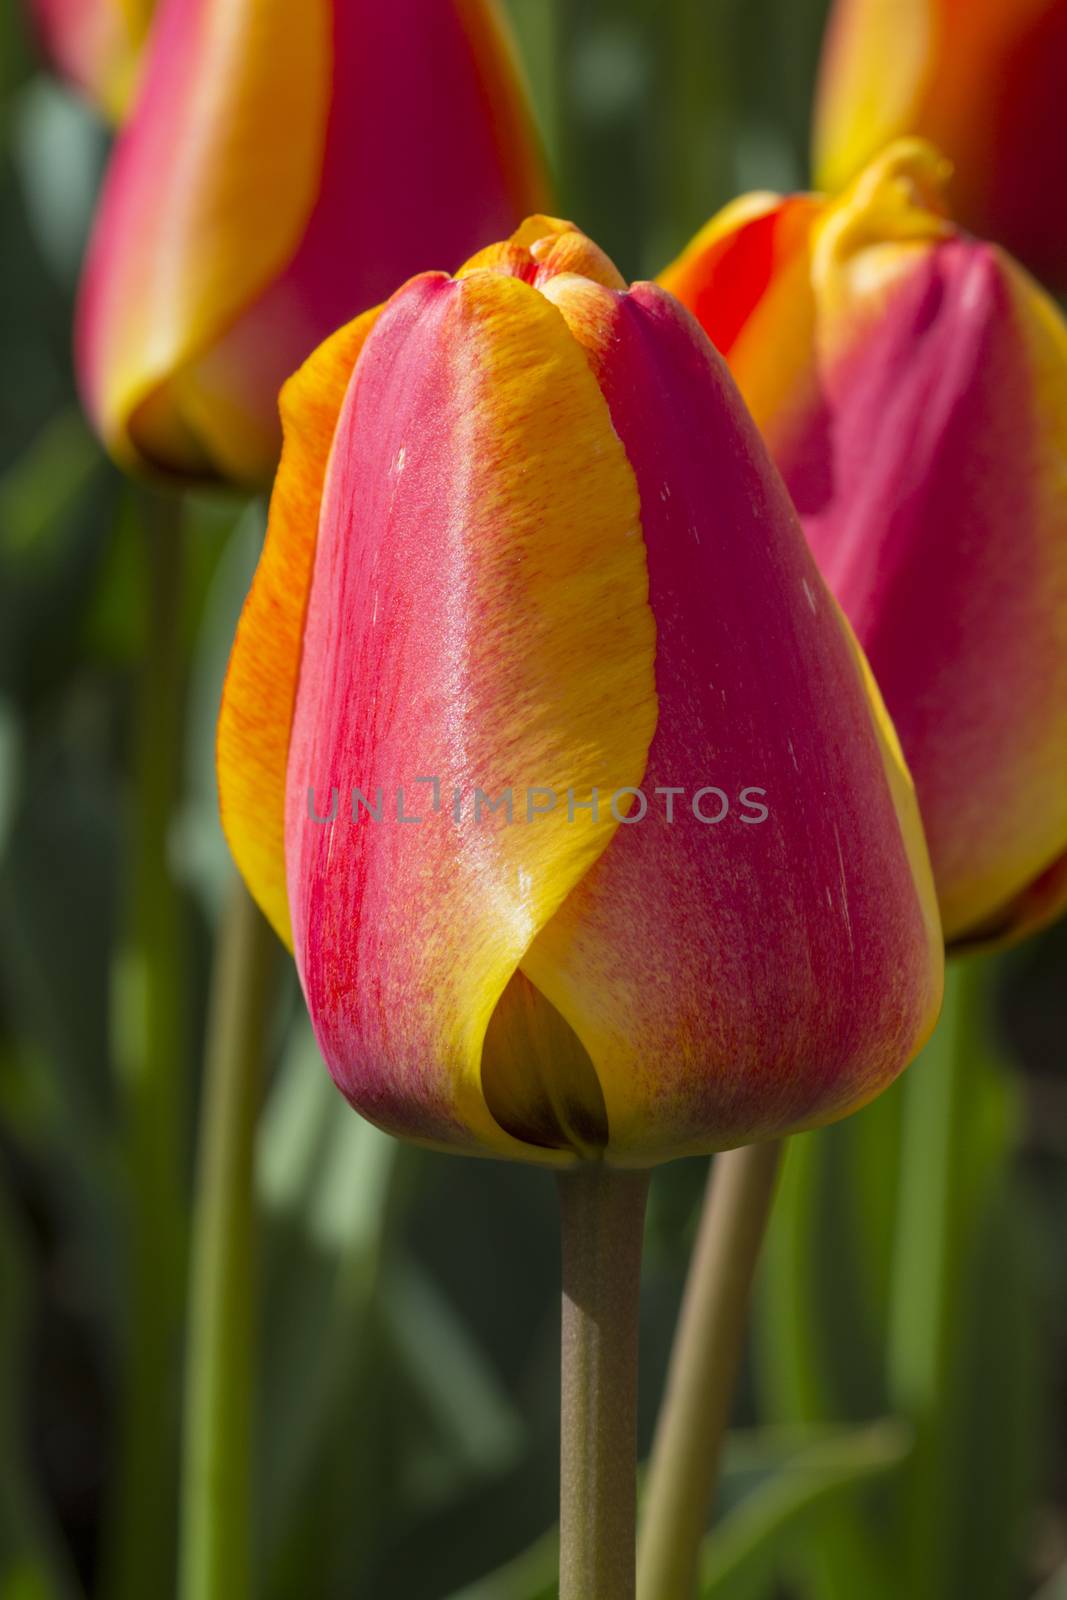 Tulips in park by Aarstudio